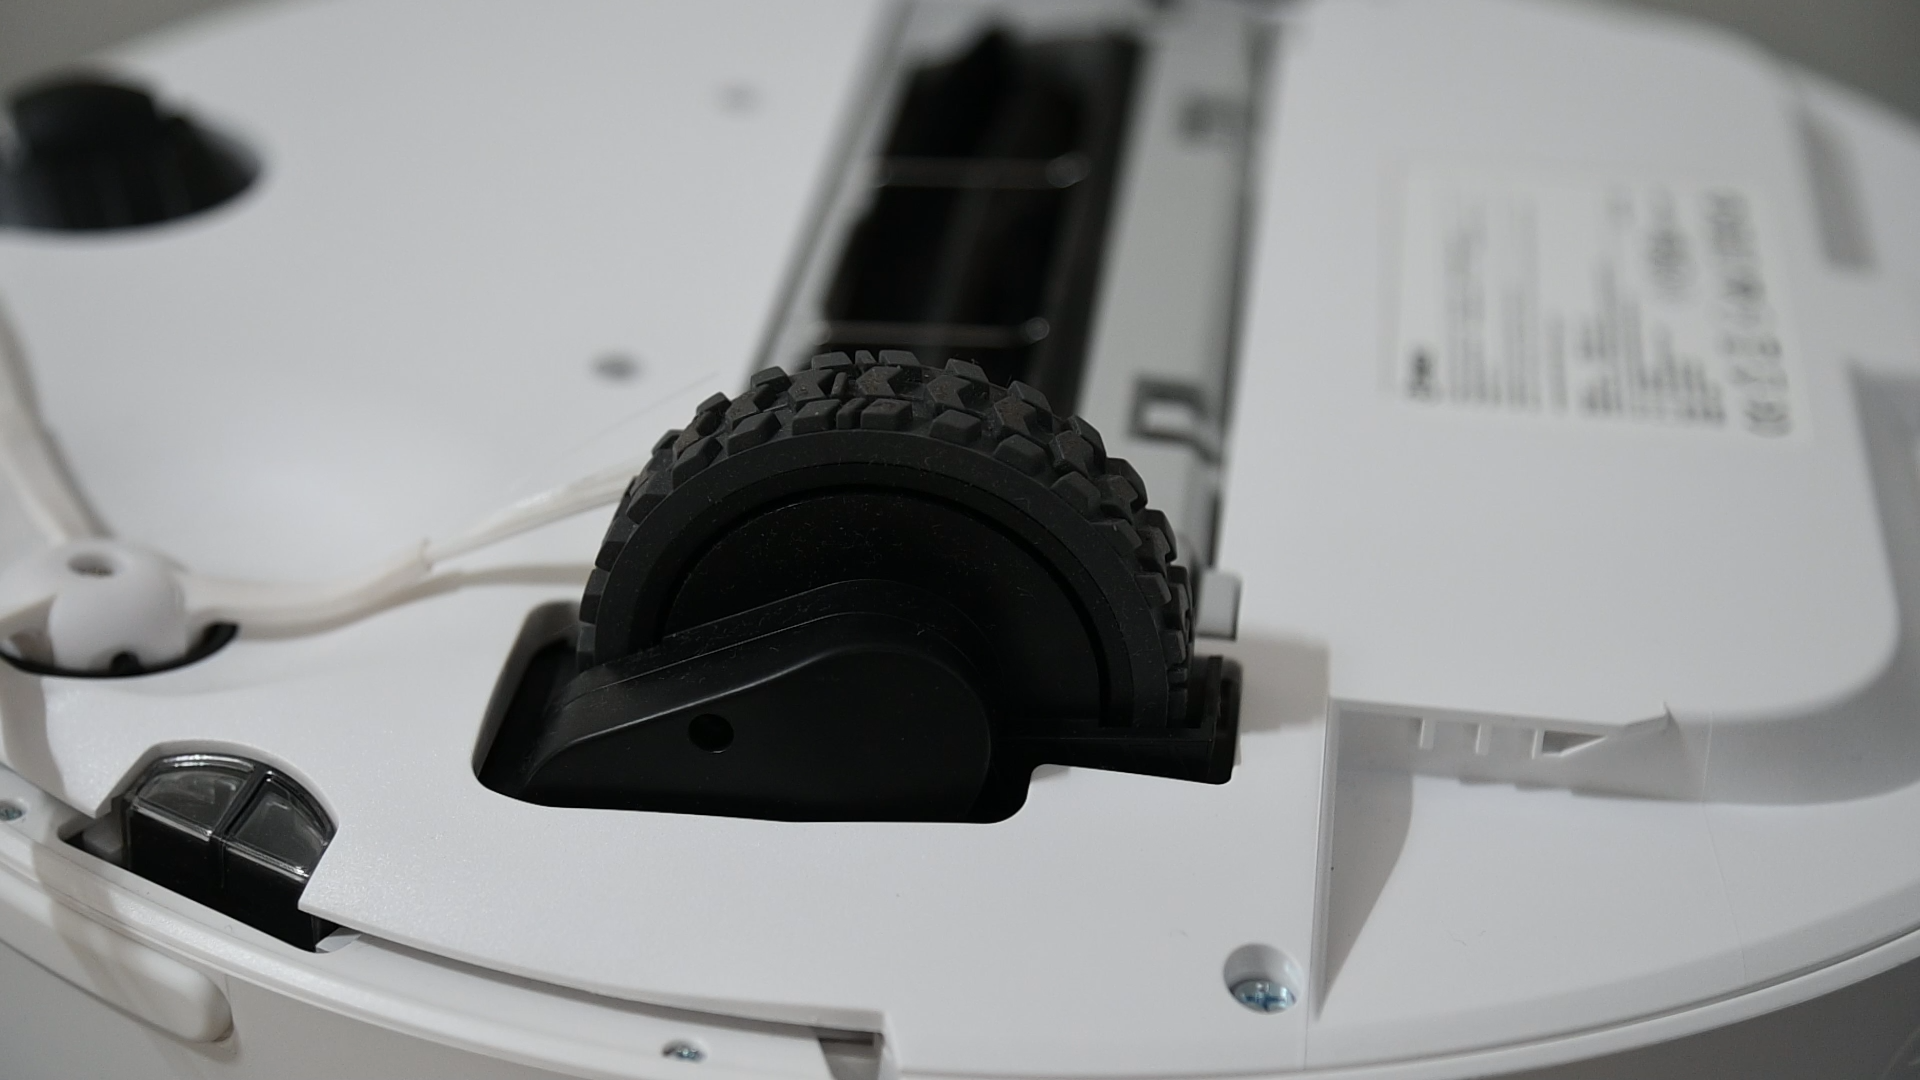 360 S7 Robot Vacuum Cleaner wheels